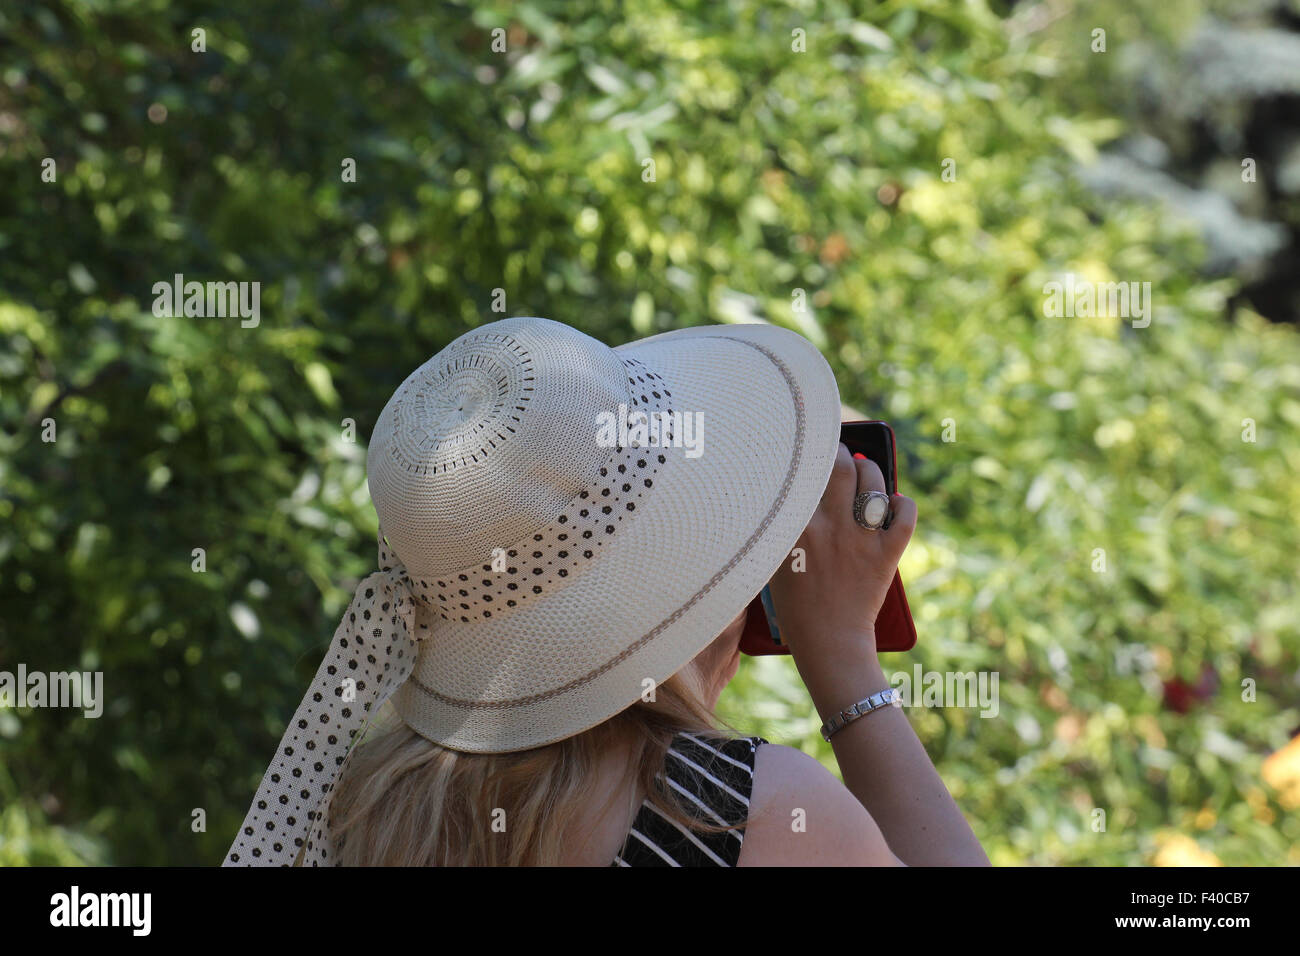 Hat fornire protezione e riparo dal sole. Foto Stock